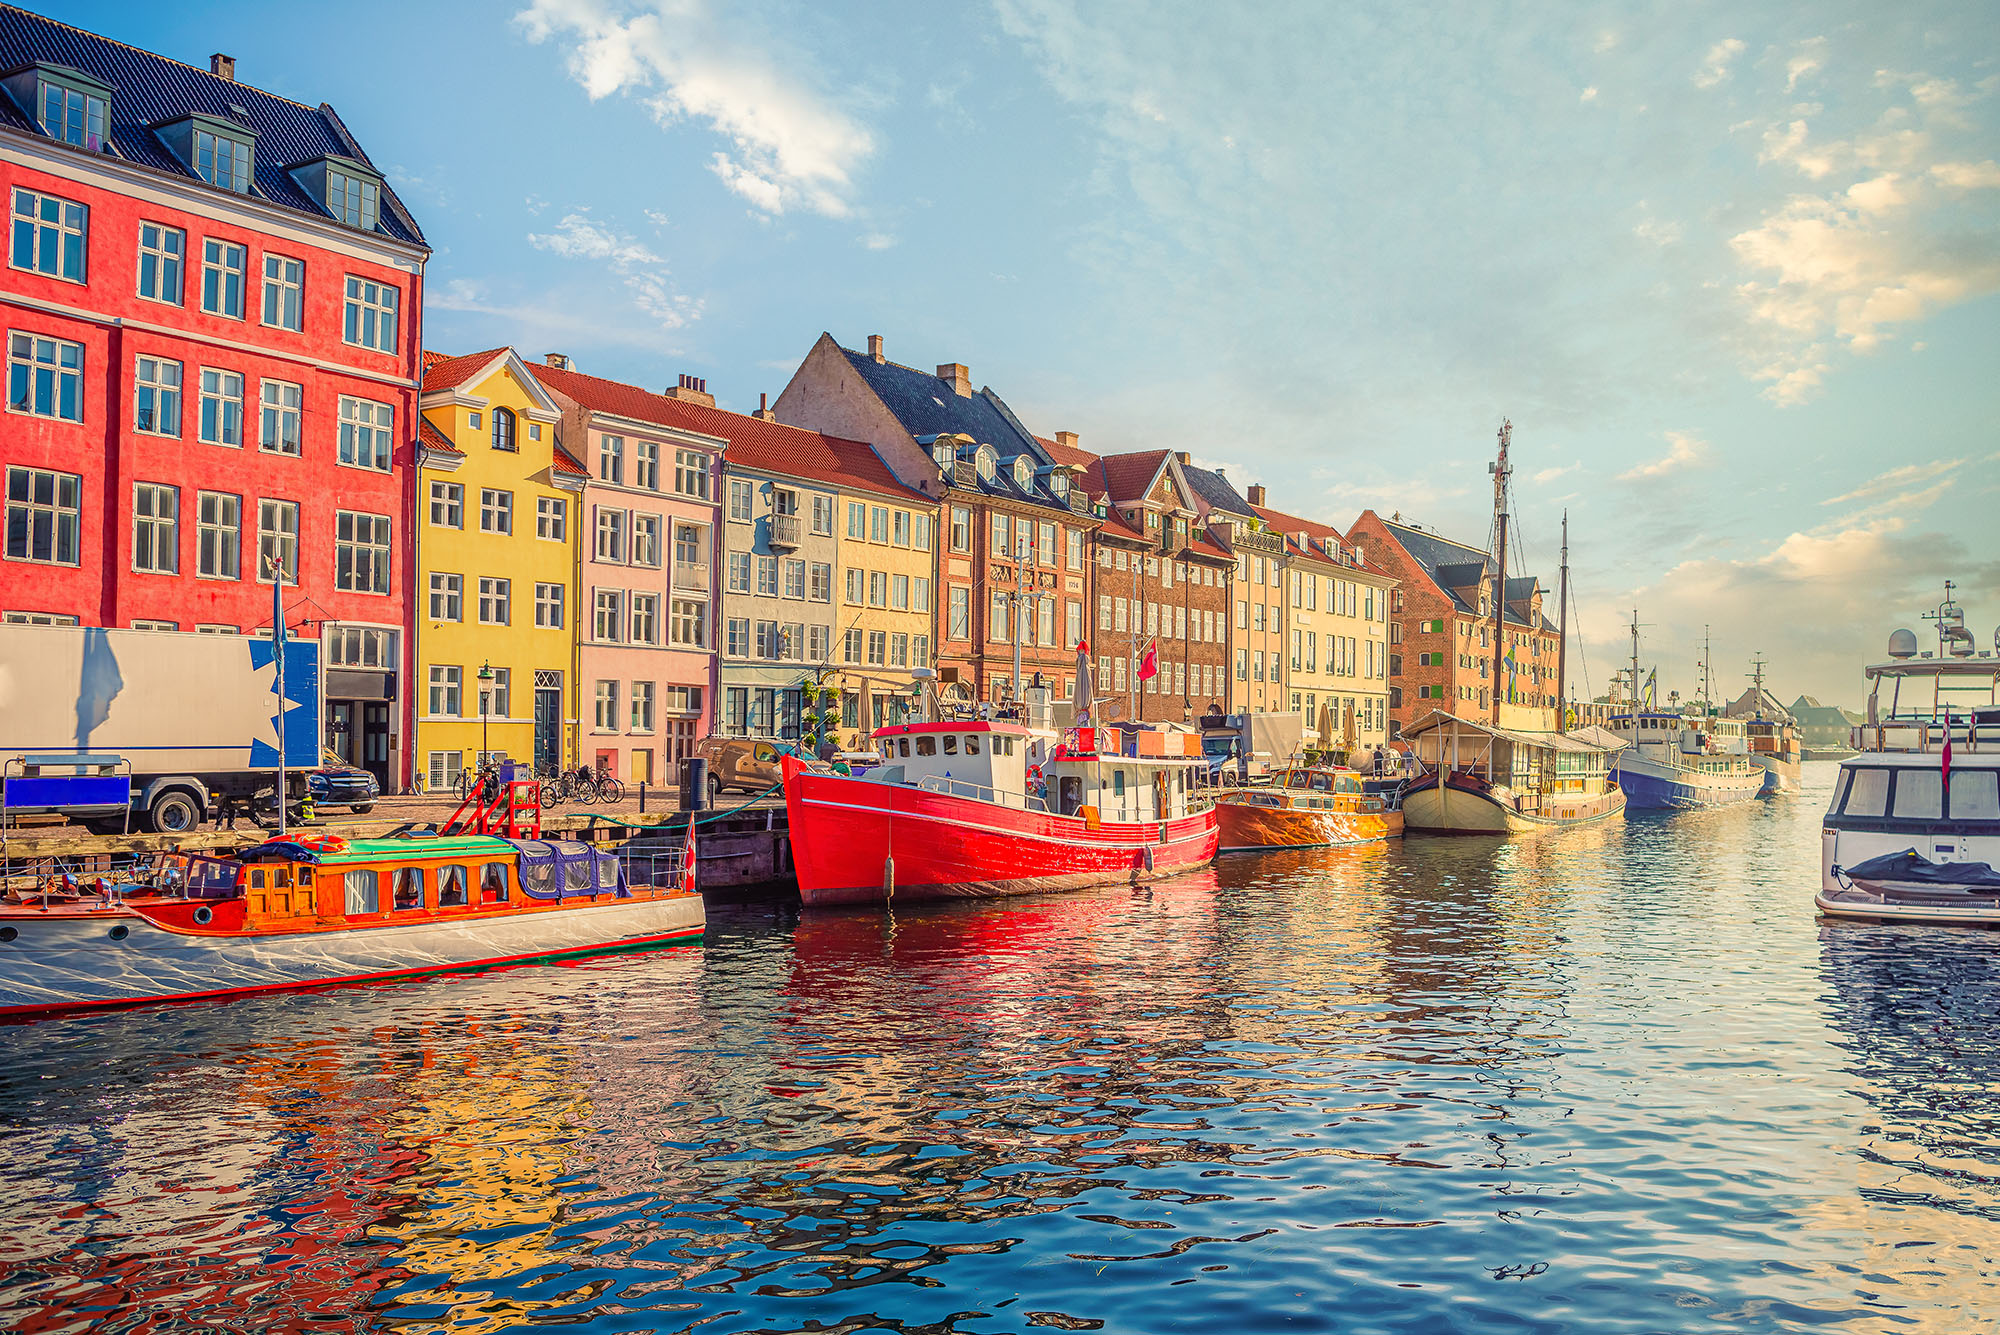 Vacanta in Copenhaga – 209 euro (zbor si cazare 4 nopti)